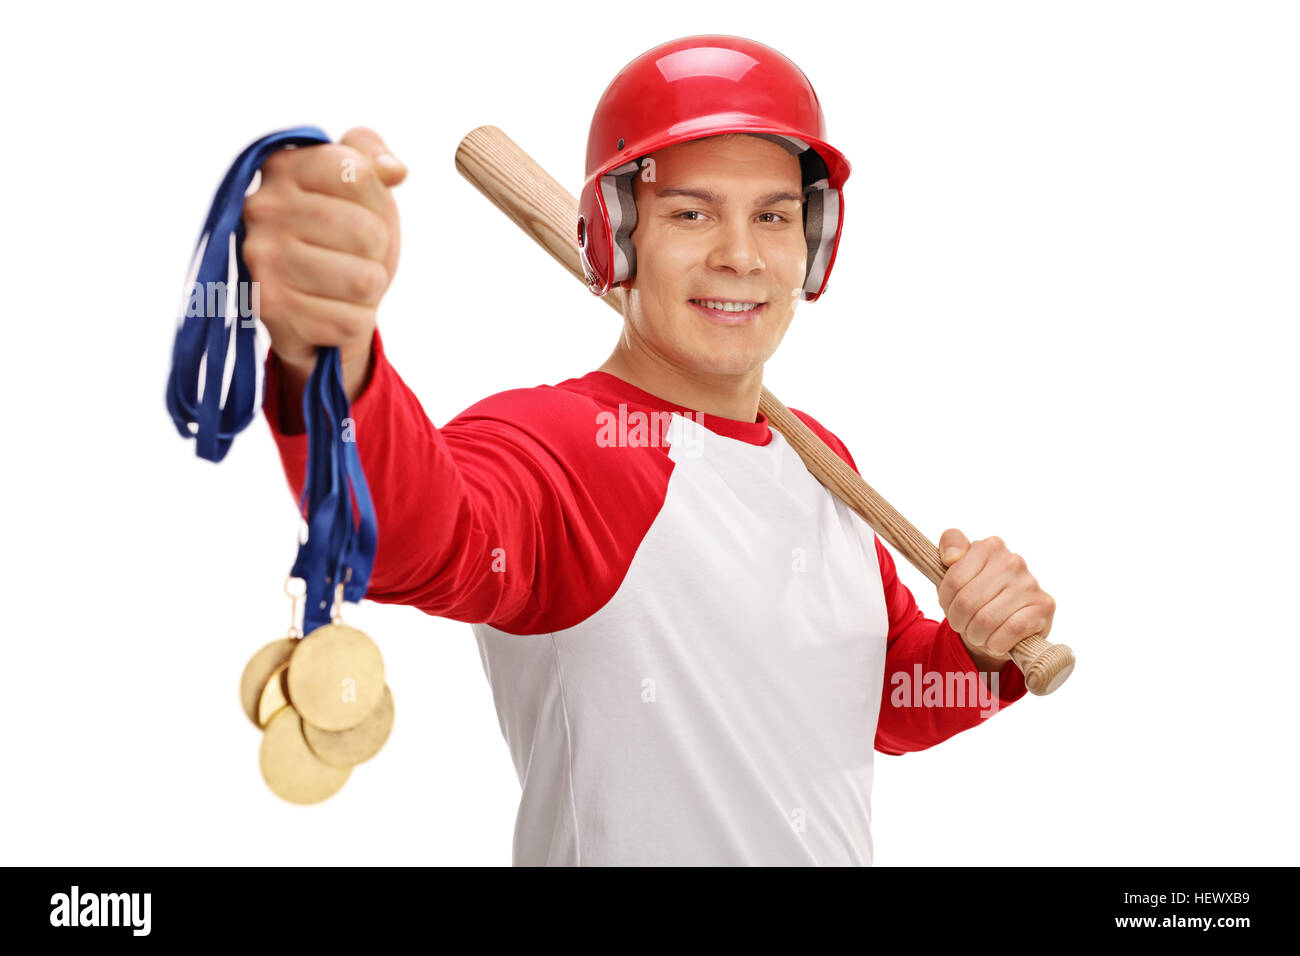 Baseball player holding médailles d'or et une chauve-souris isolé sur fond blanc Banque D'Images